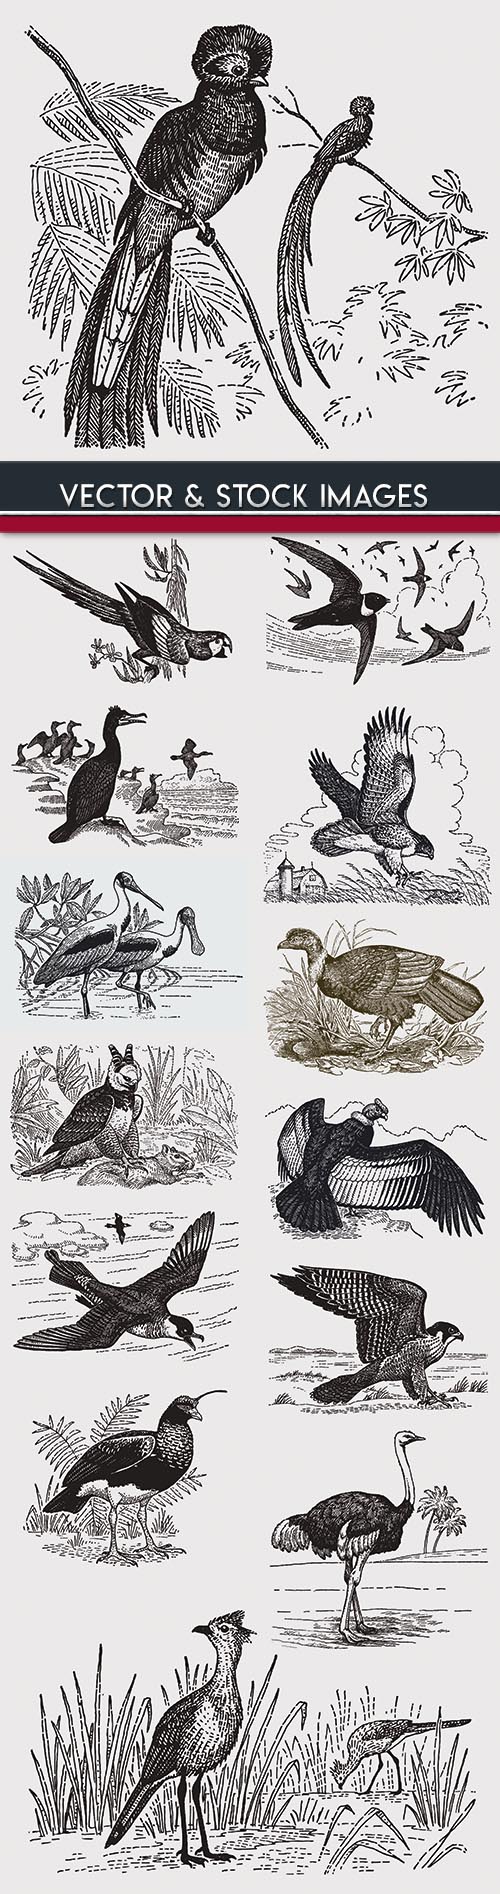 Birds drawn engravings in vintage style